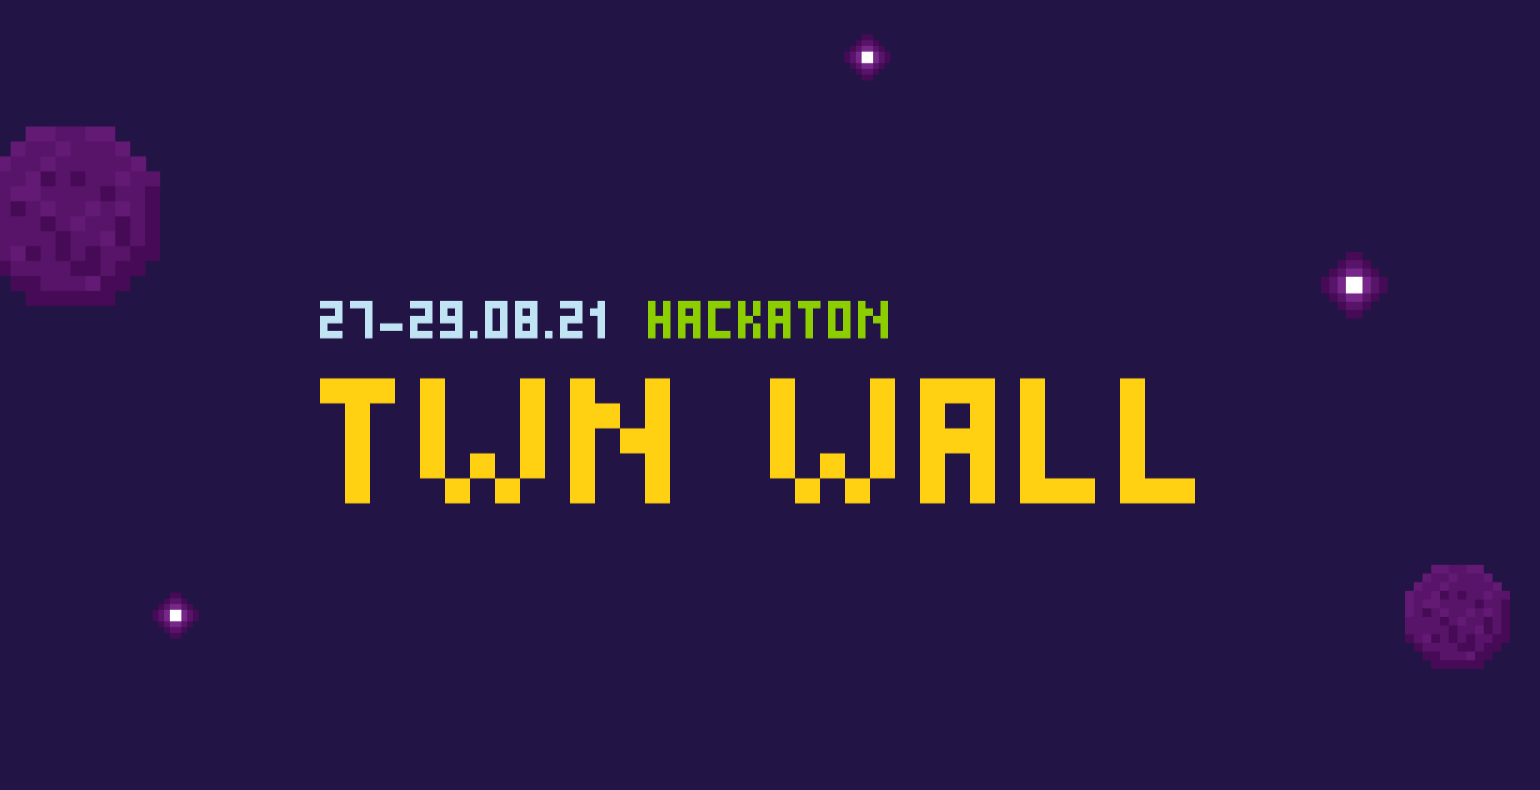 TWN wall ehk interaktiivne seinatahvel, häkaton 27-29.08.21